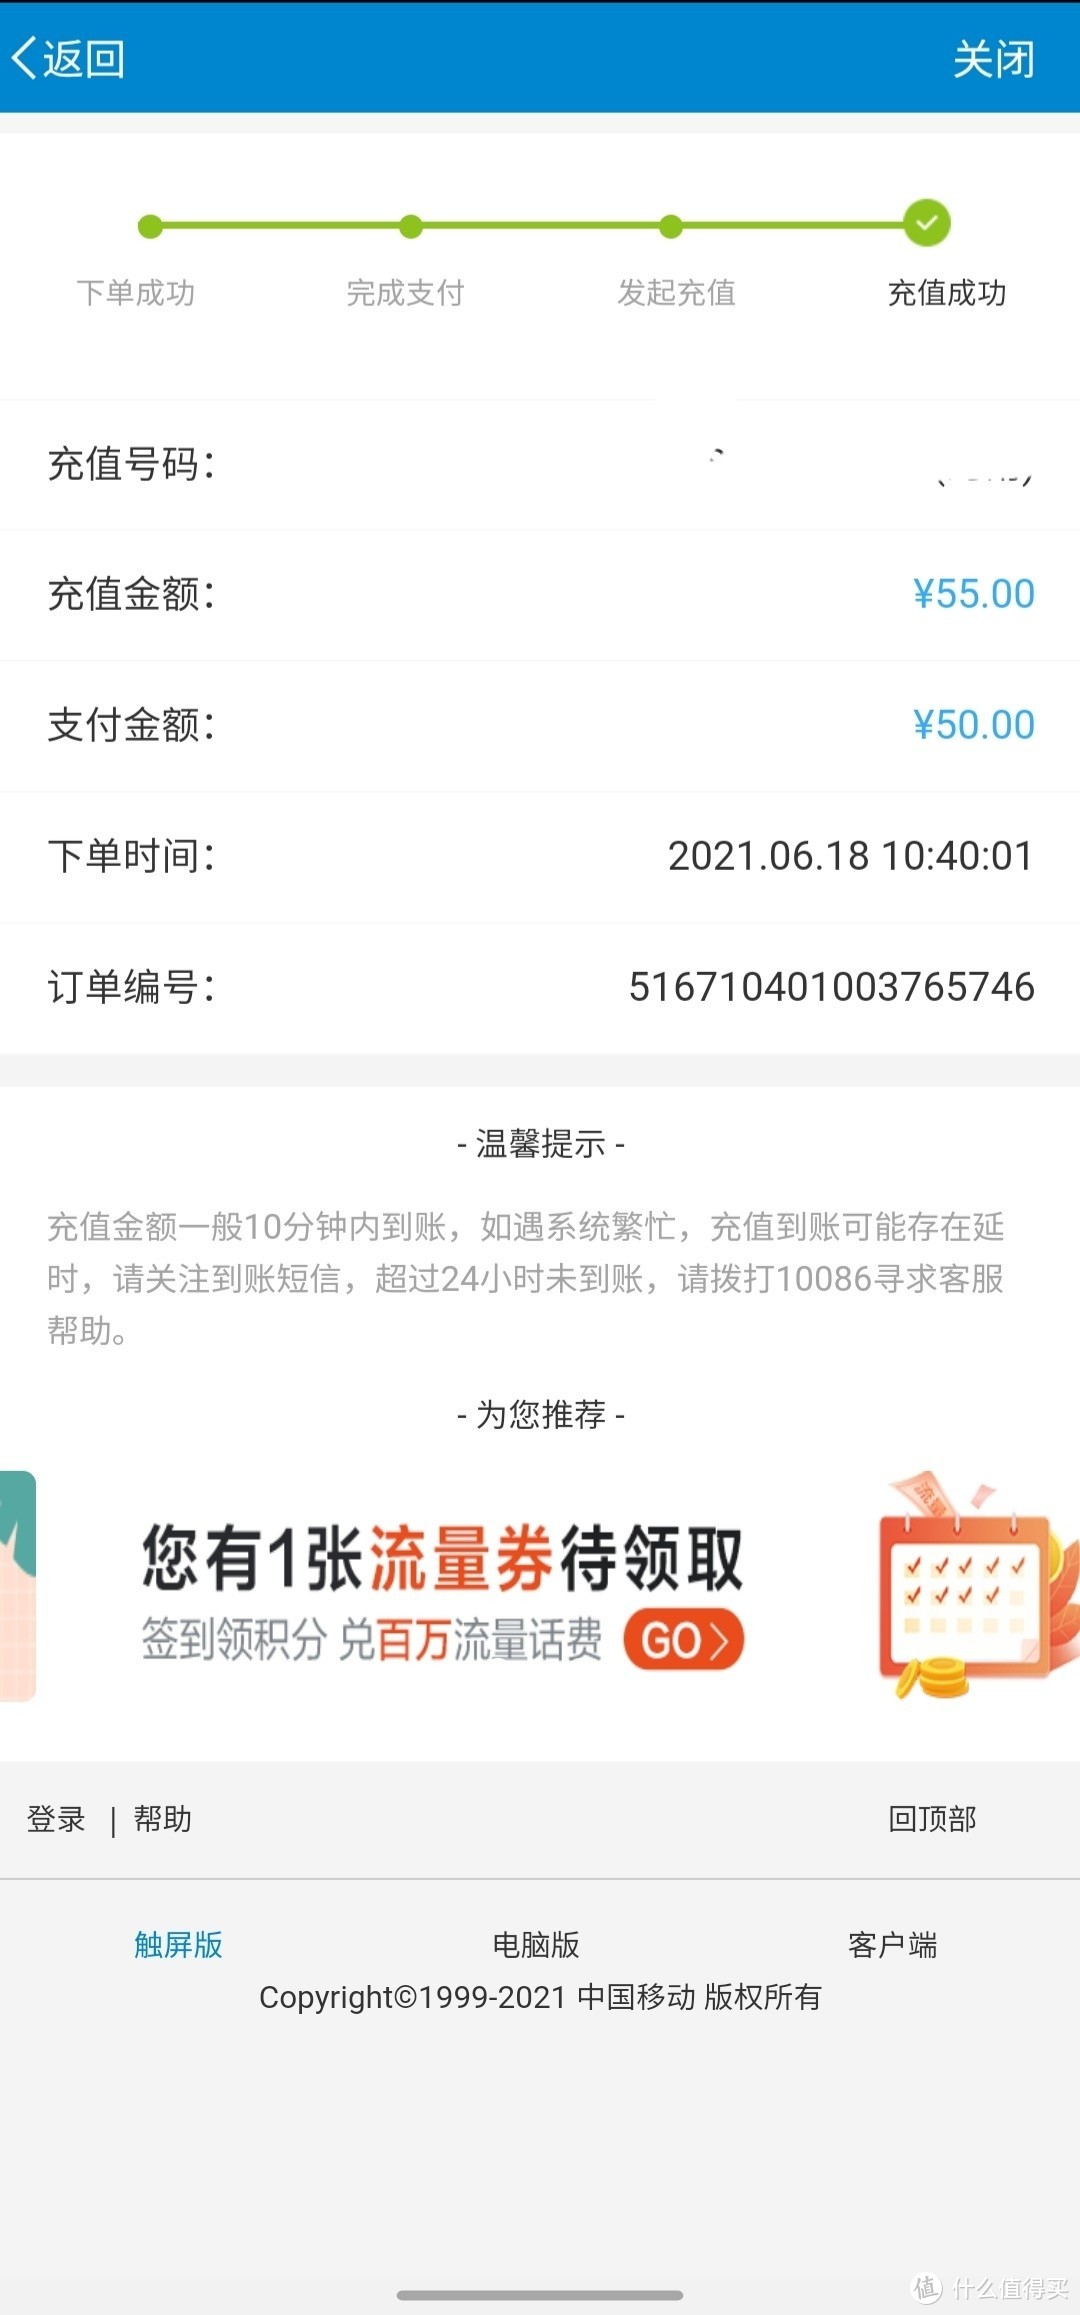 中国移动手机端周五特权券满50送5元